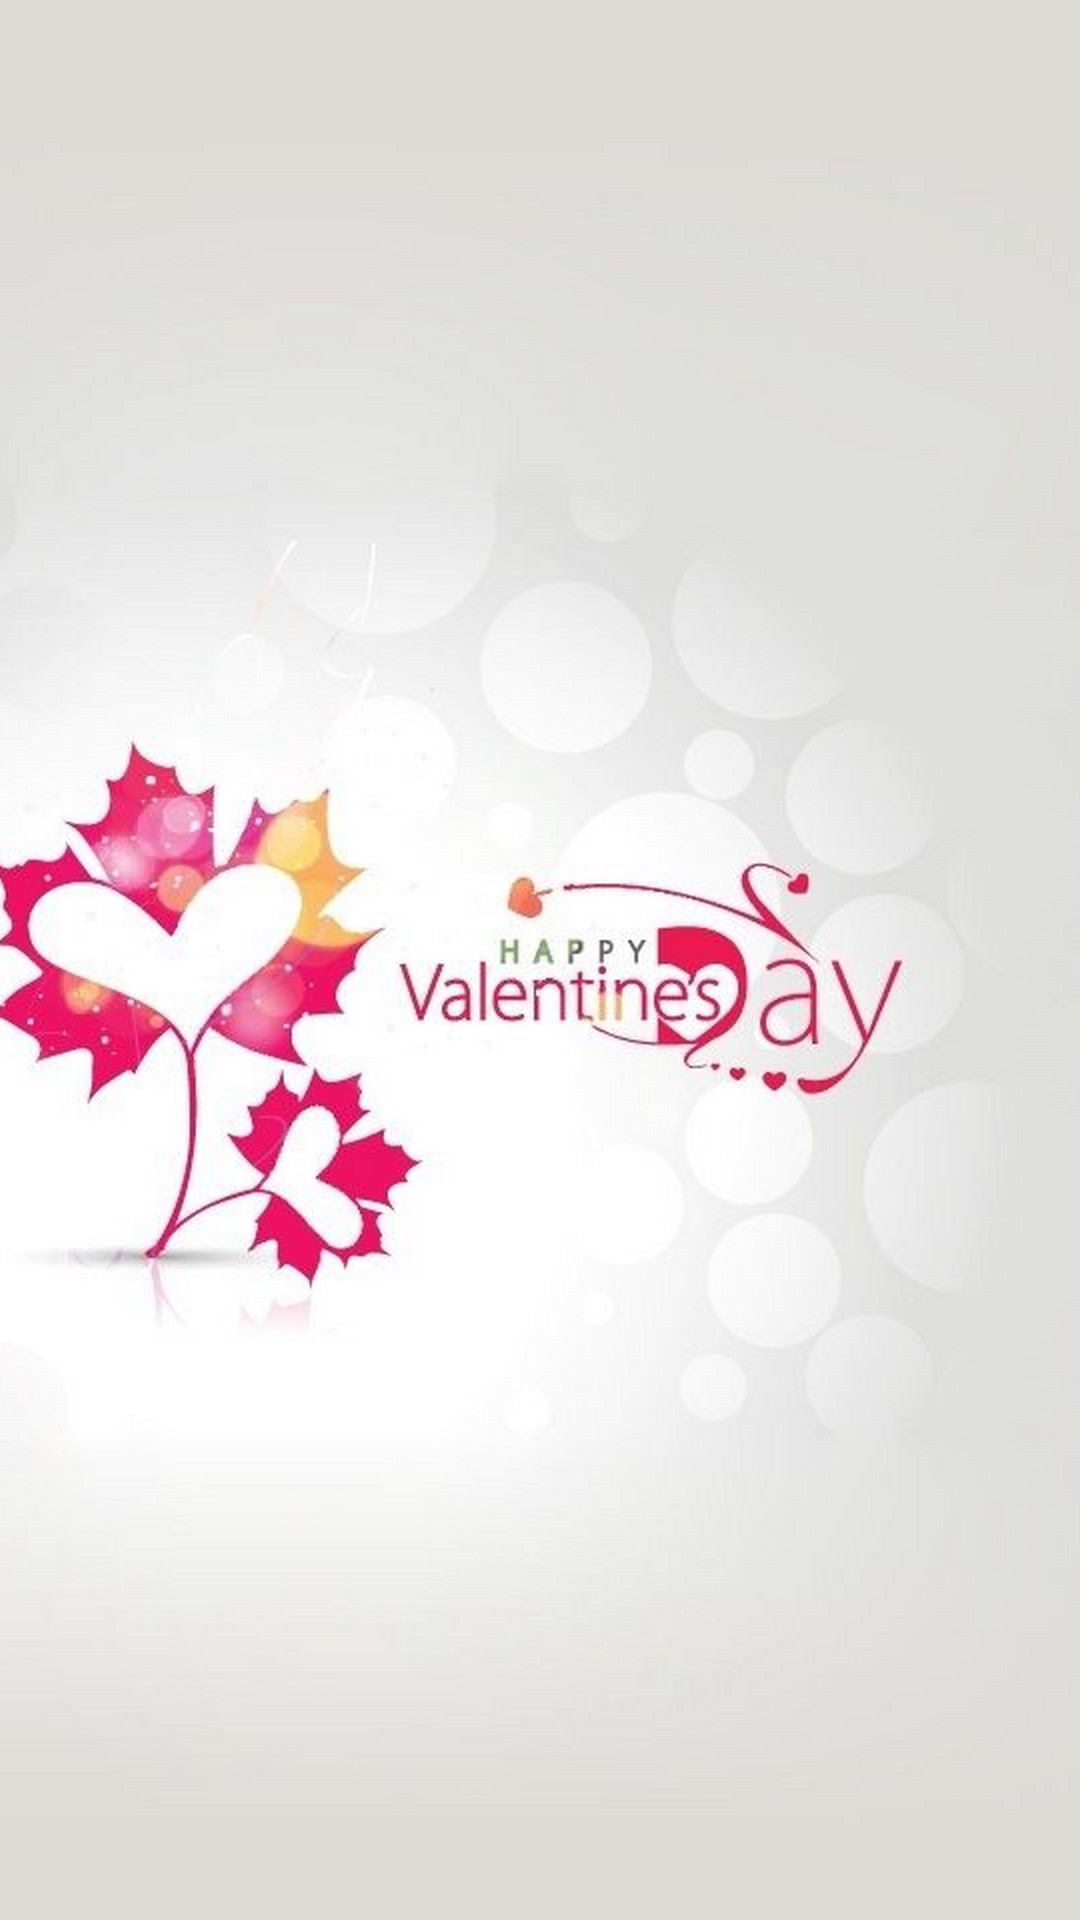 Happy Valentine Day Wallpaper Iphone Resolution - Valentine's Day -  1080x1920 Wallpaper 